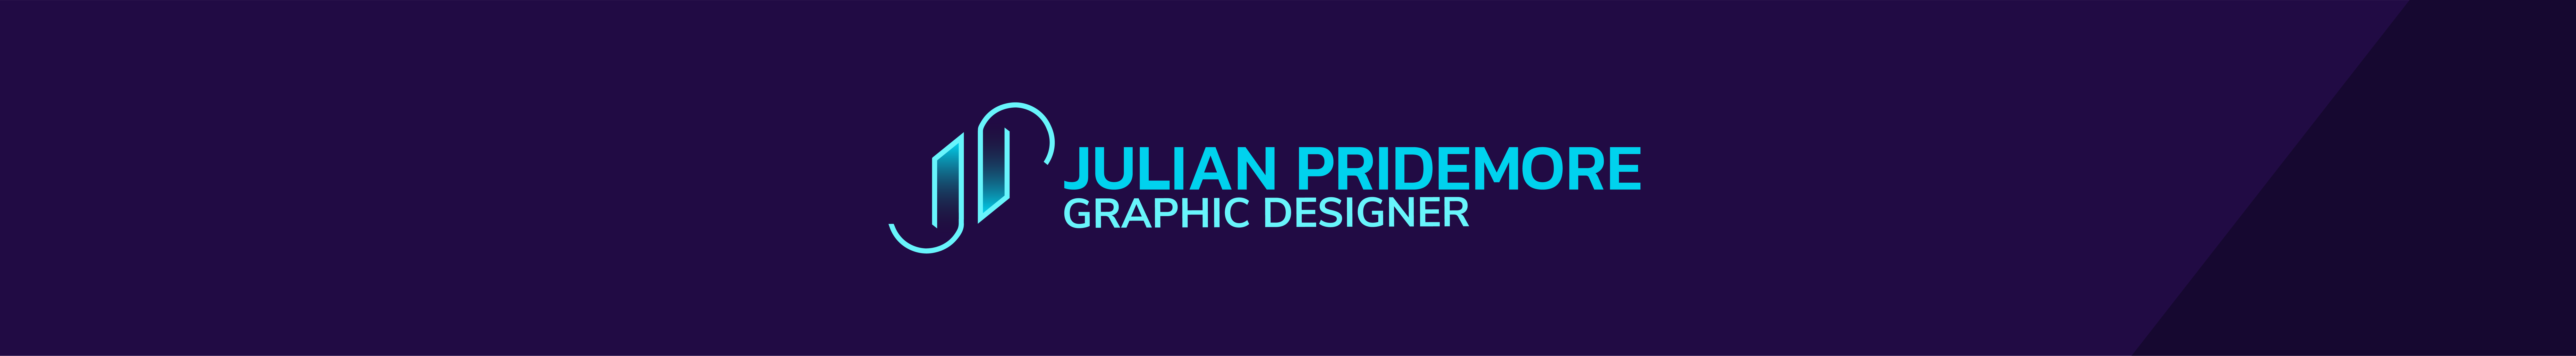 Julian Pridemore のプロファイルバナー